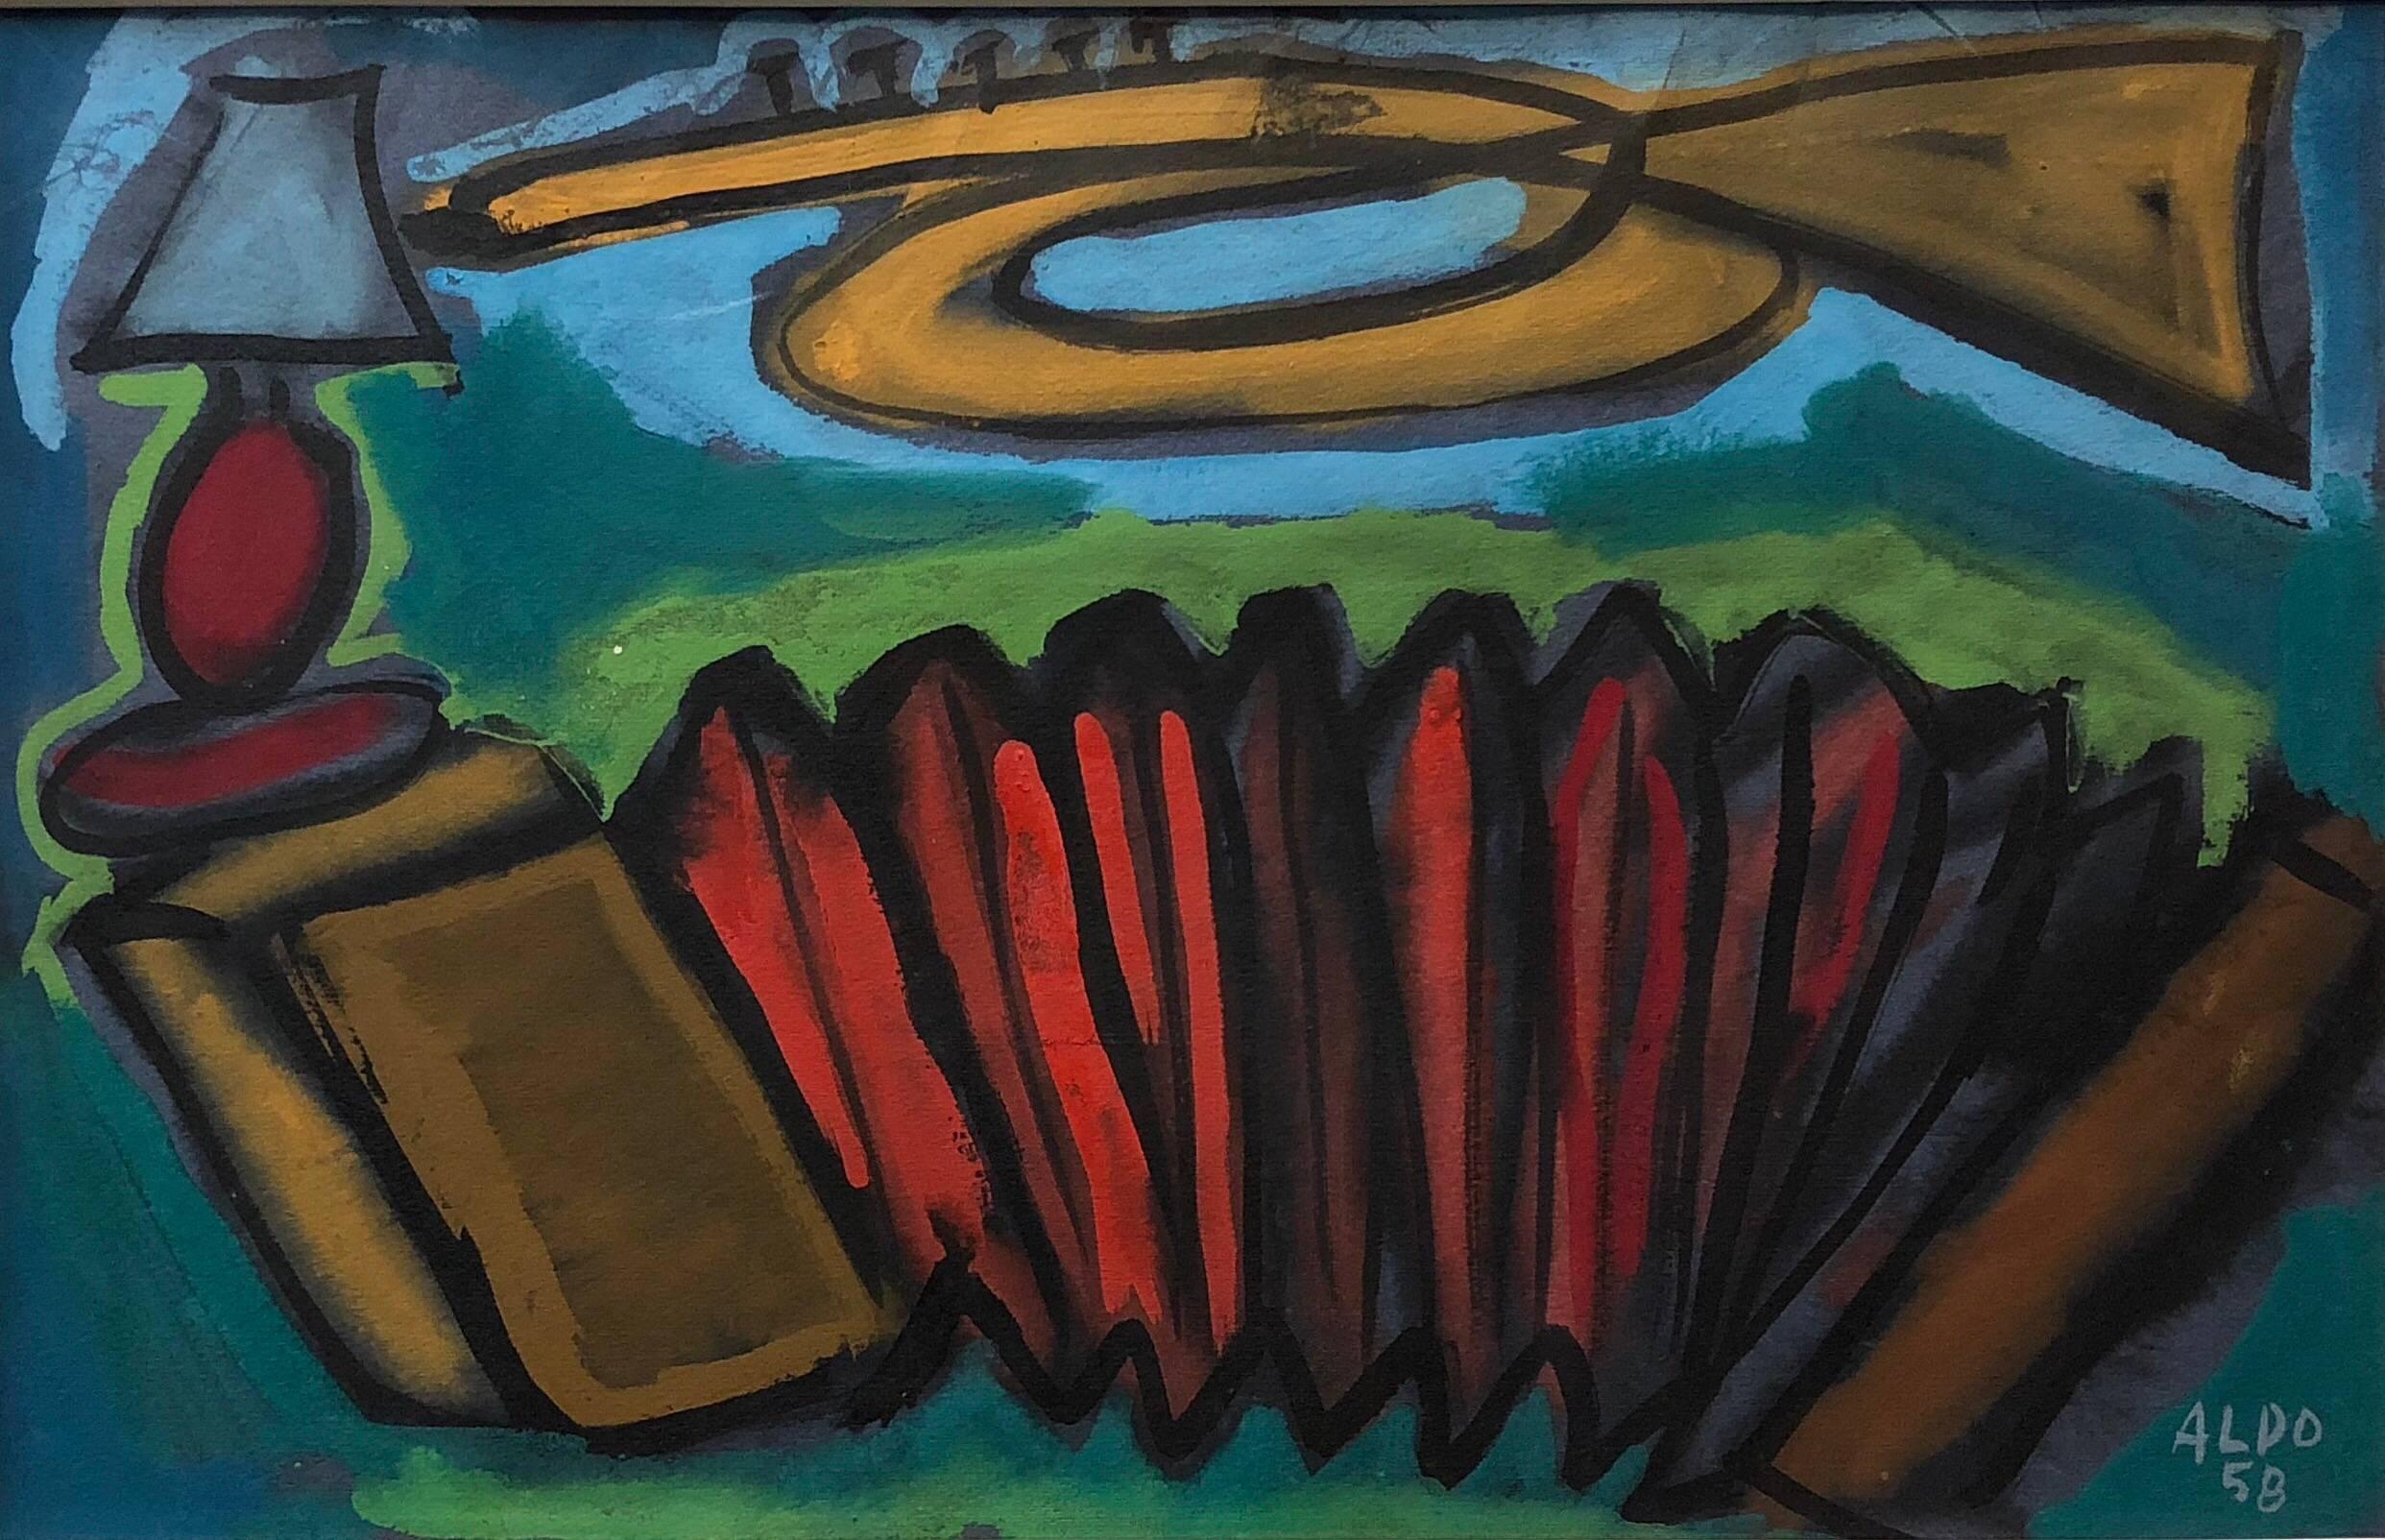 Abstraktes, farbenfrohes, französisches modernistisches Gemälde, 1958, signiert Aldo 